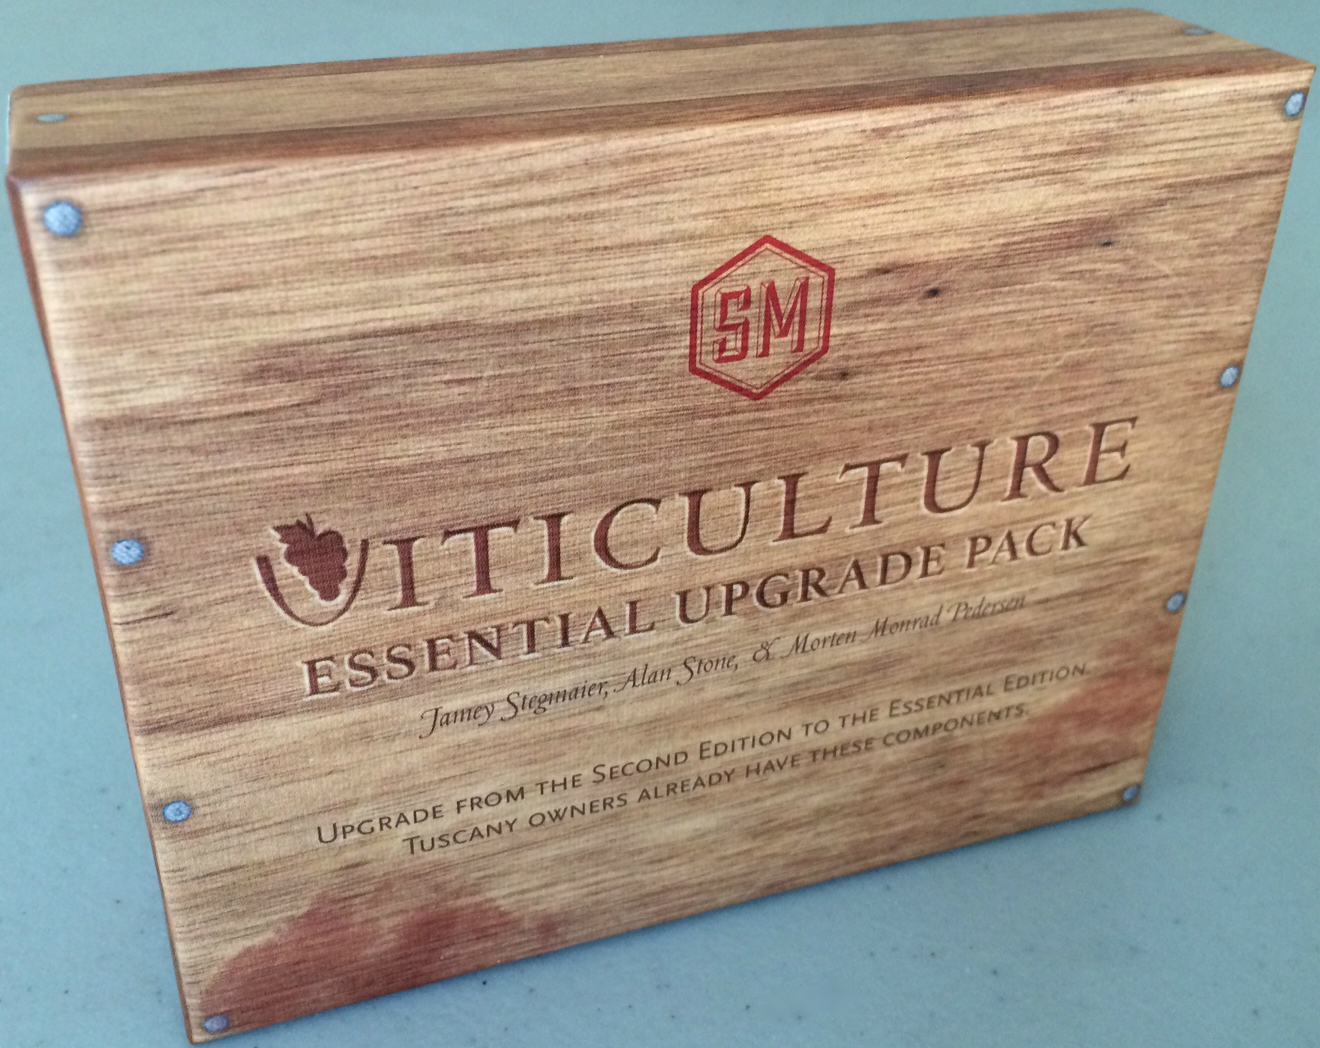 Viticulture Essential Upgrade pack